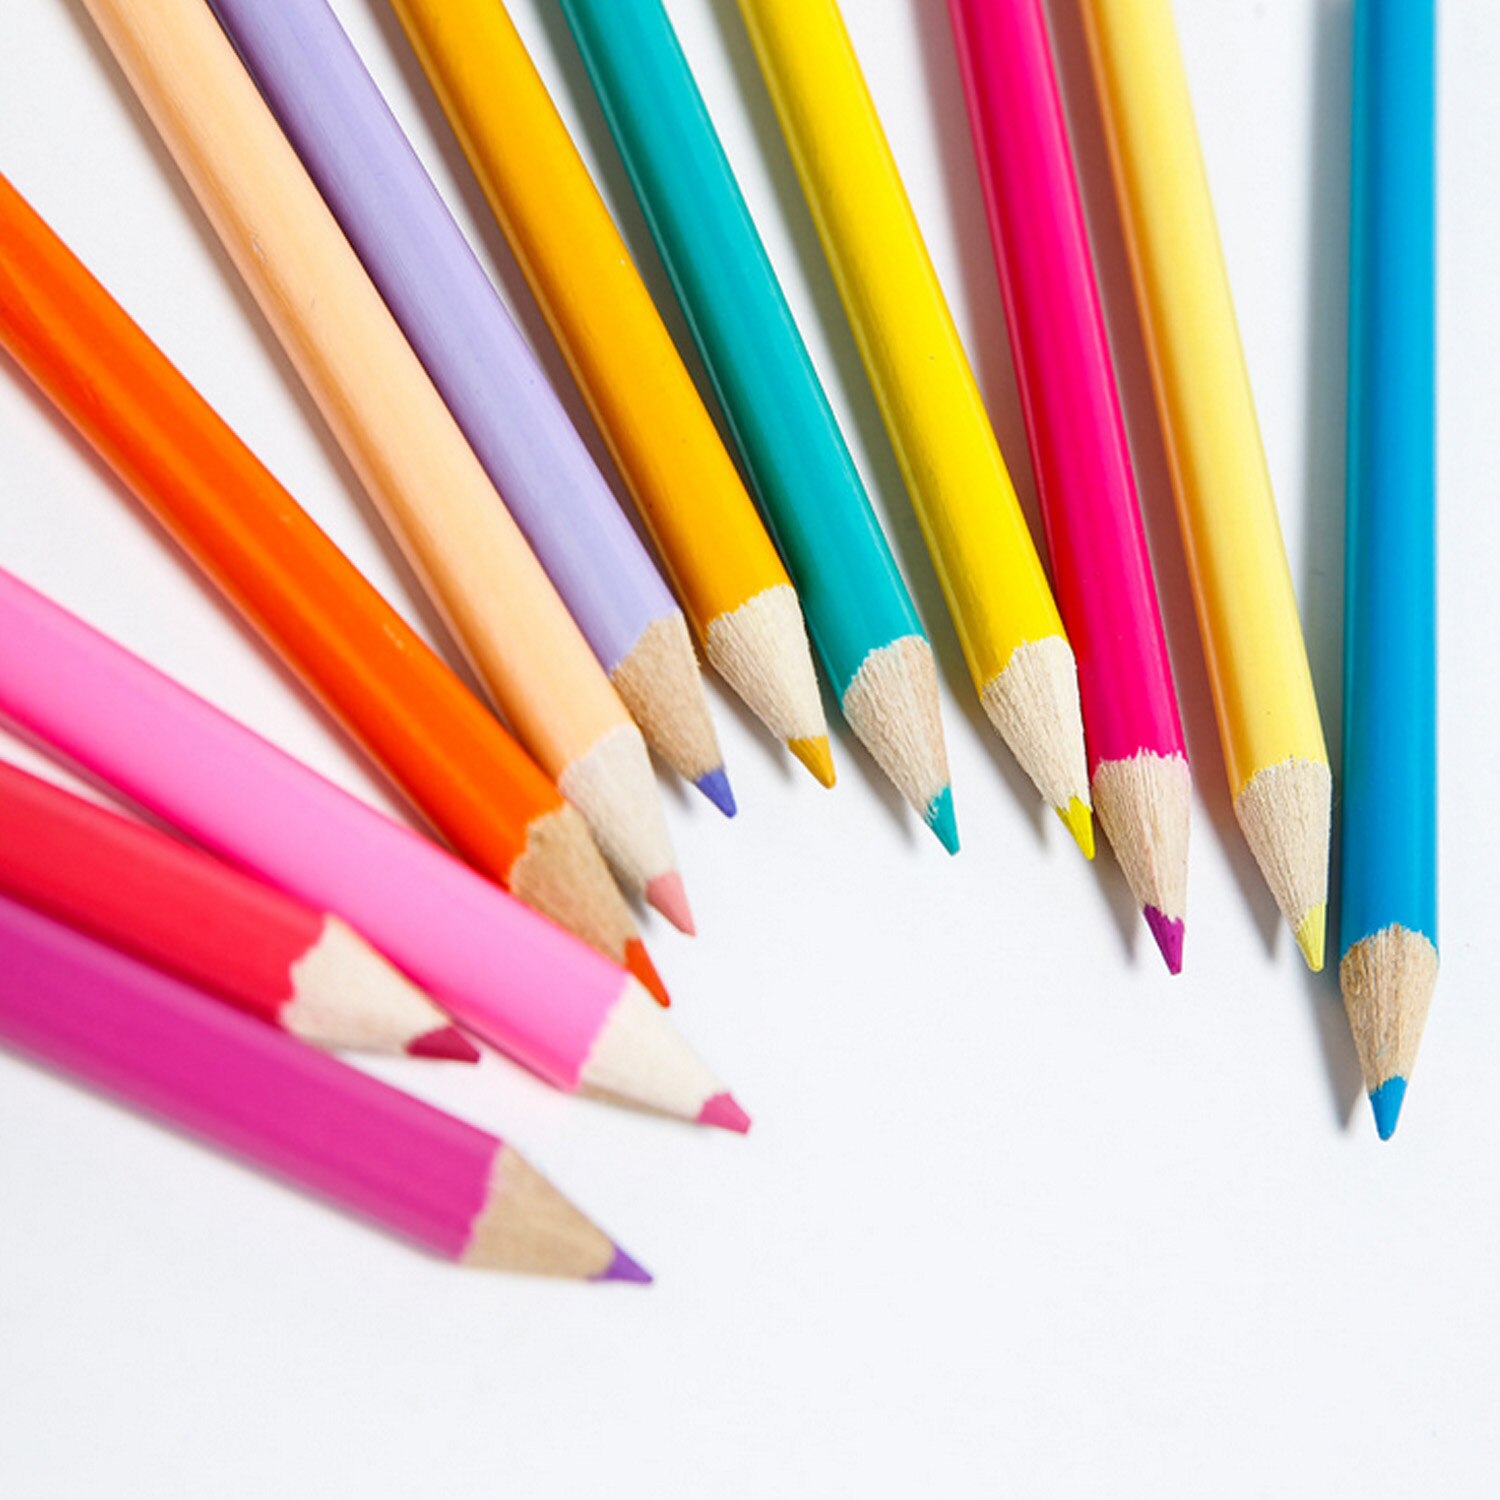 208 stk børn børn maleri tegneværktøj sæt med farvede blyanter tuschblyanter farveblyanter til hjemmeskole børnehaveforsyninger